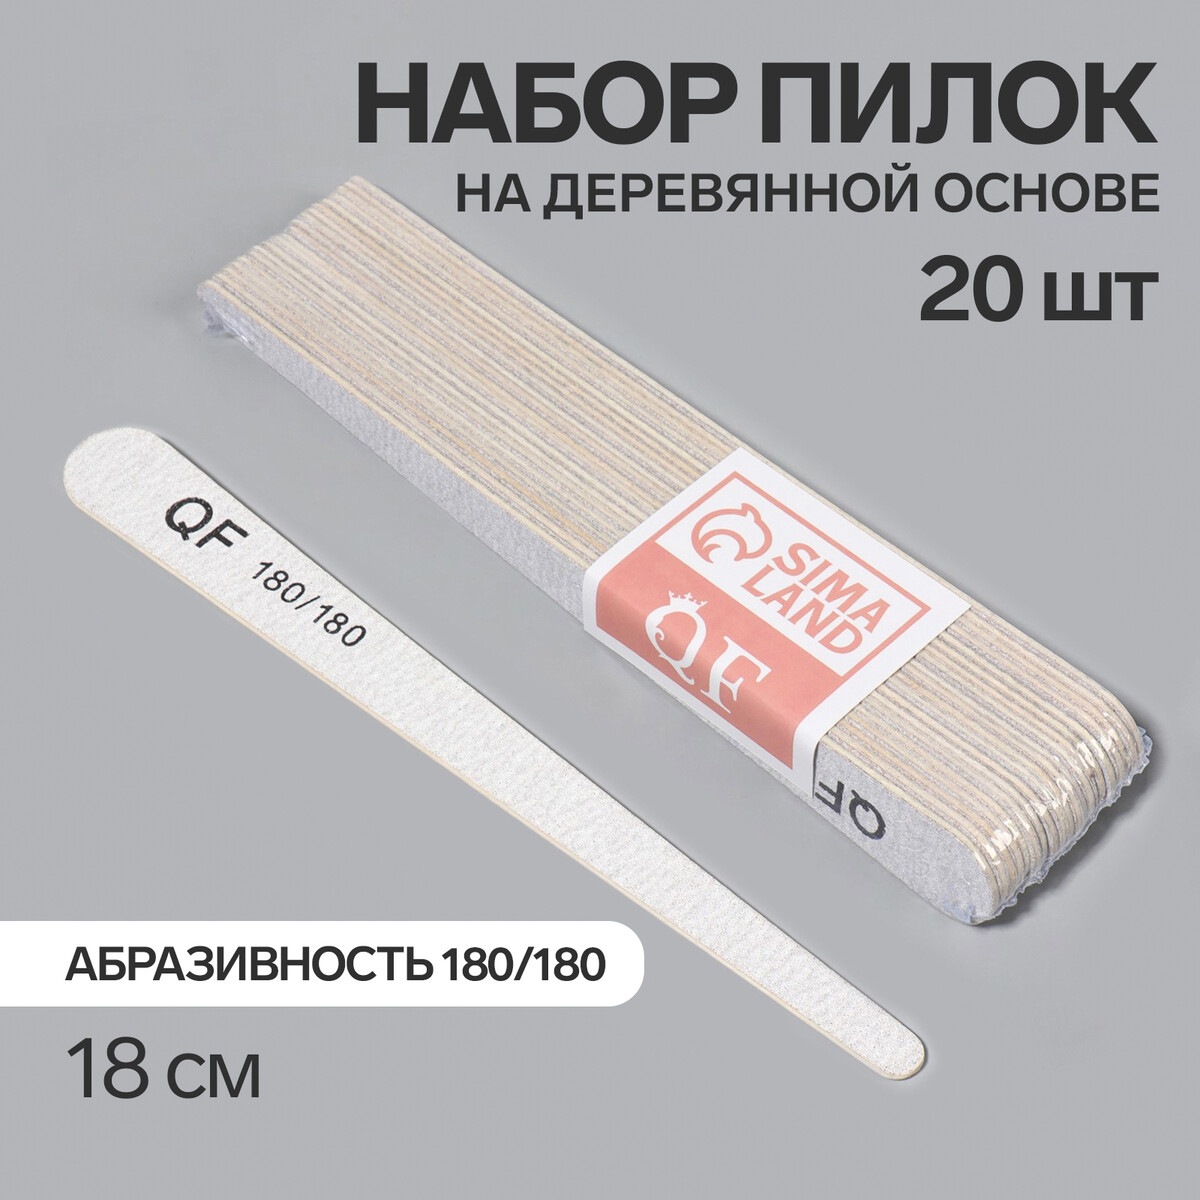 Пилка-наждак, набор 20 шт, деревянная основа, абразивность 180/180, 18 см, цвет серый основа и сменные файлы для пилки 18 см абразивность 240 10 шт